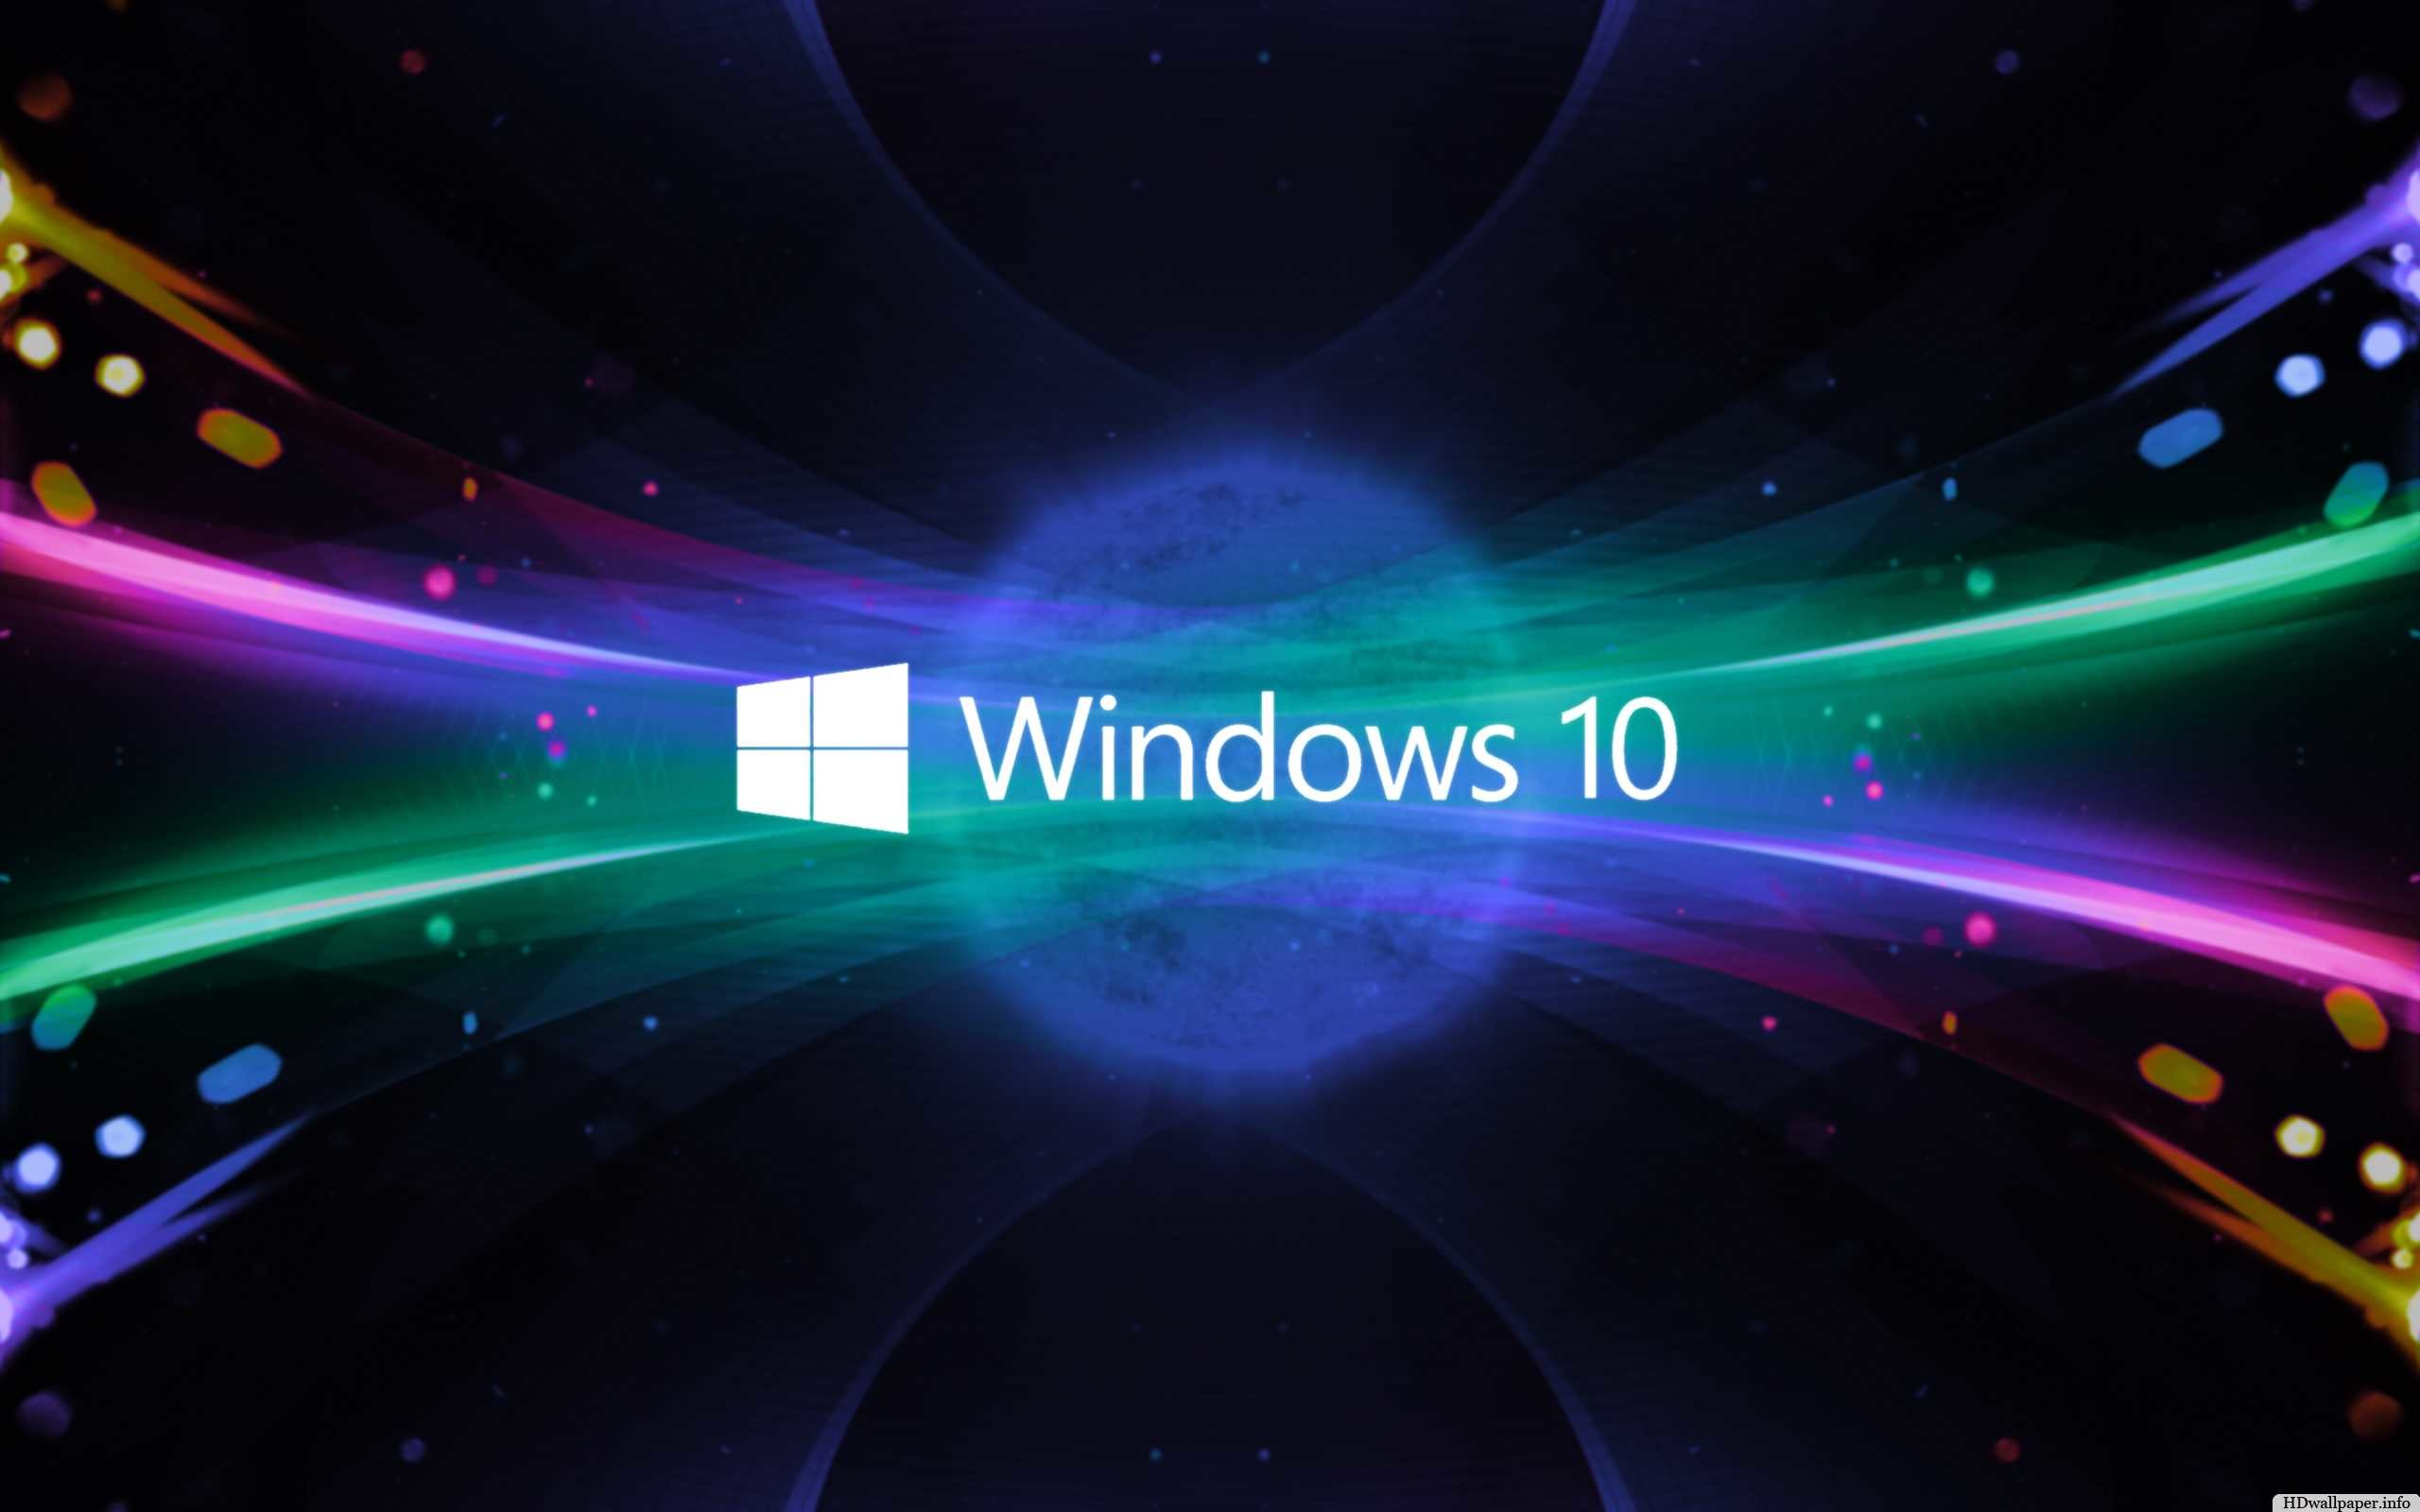 Bạn đang tìm kiếm những hình nền 3D độc đáo và đẹp mắt nhất cho hệ điều hành Windows 10? Bạn đã đến đúng chỗ rồi! Với 59 hình nền đủ để bạn lựa chọn, Free download 3D Wallpapers for Windows 10 chính là sự lựa chọn tuyệt vời nhất cho bạn. Tải ngay và thưởng thức!